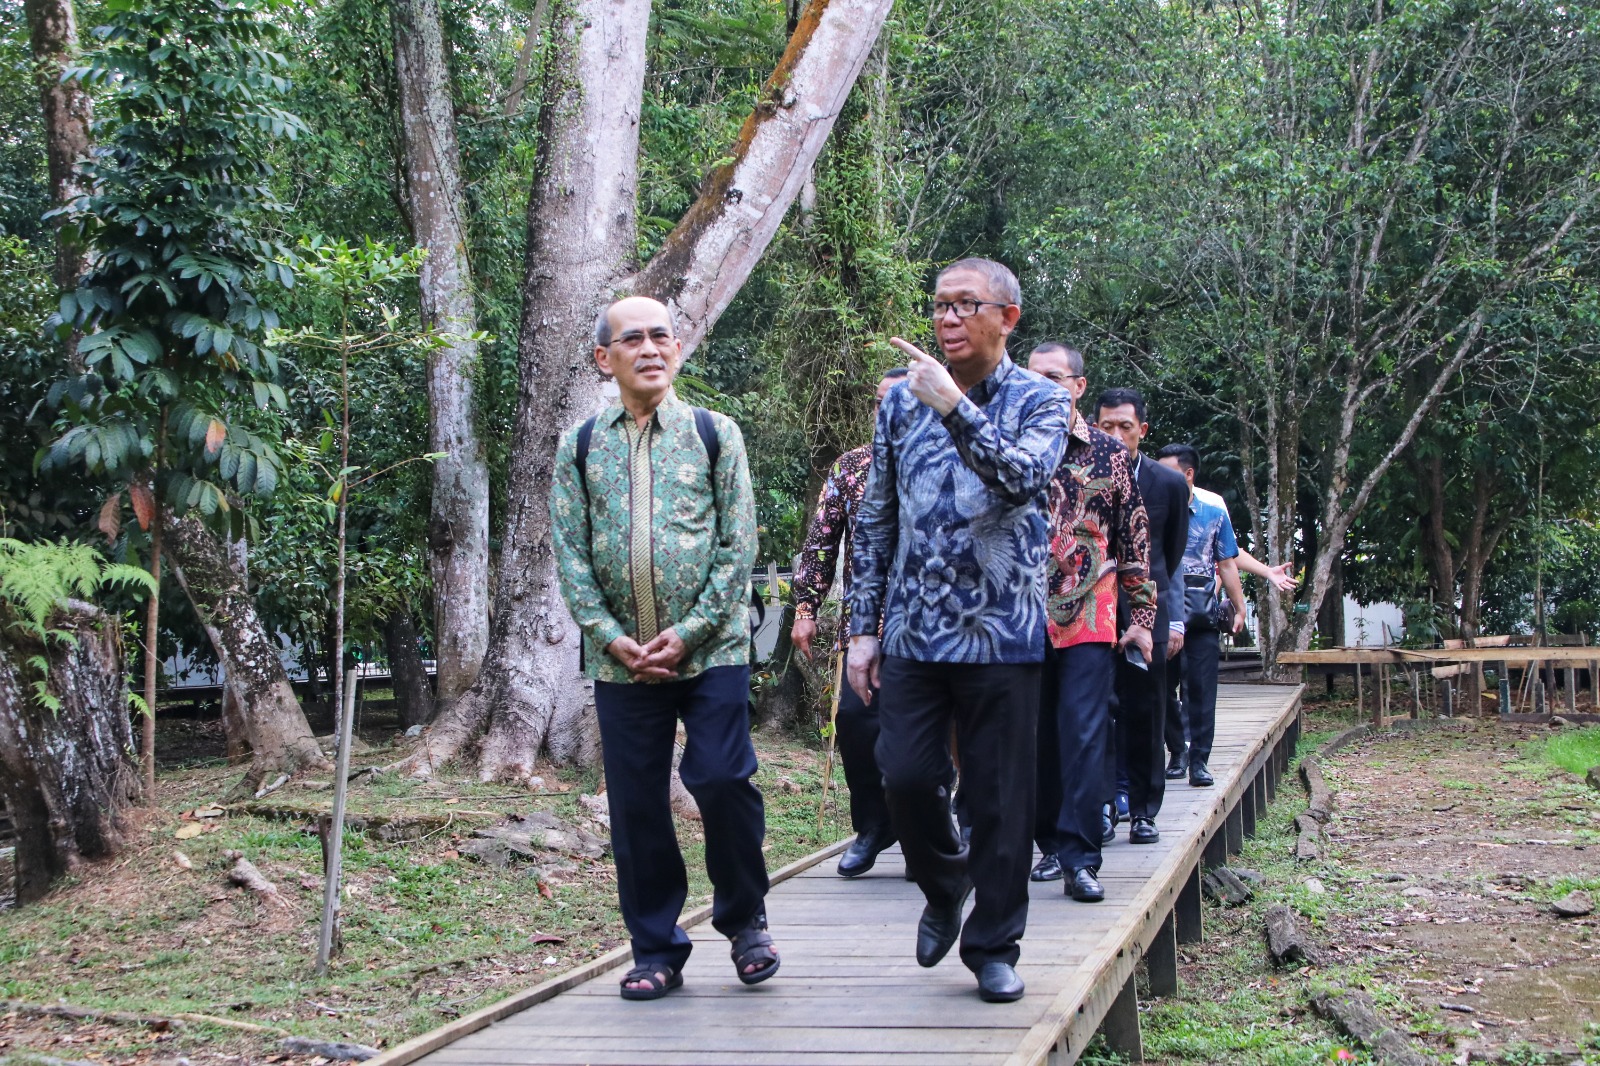 Gubernur Kalbar, Sutarmijdji mengajak Faisal Basri dan nara sumber lainnya berkunjung ke Galeri Hasil Hutan yang berada di samping Komplek Pendopo Gubernur Kalbar untuk melihat beragam keunikan hasil hutan yang dimiliki oleh Kalimantan Barat. (Foto: Biro Adpim For KalbarOnline.com)